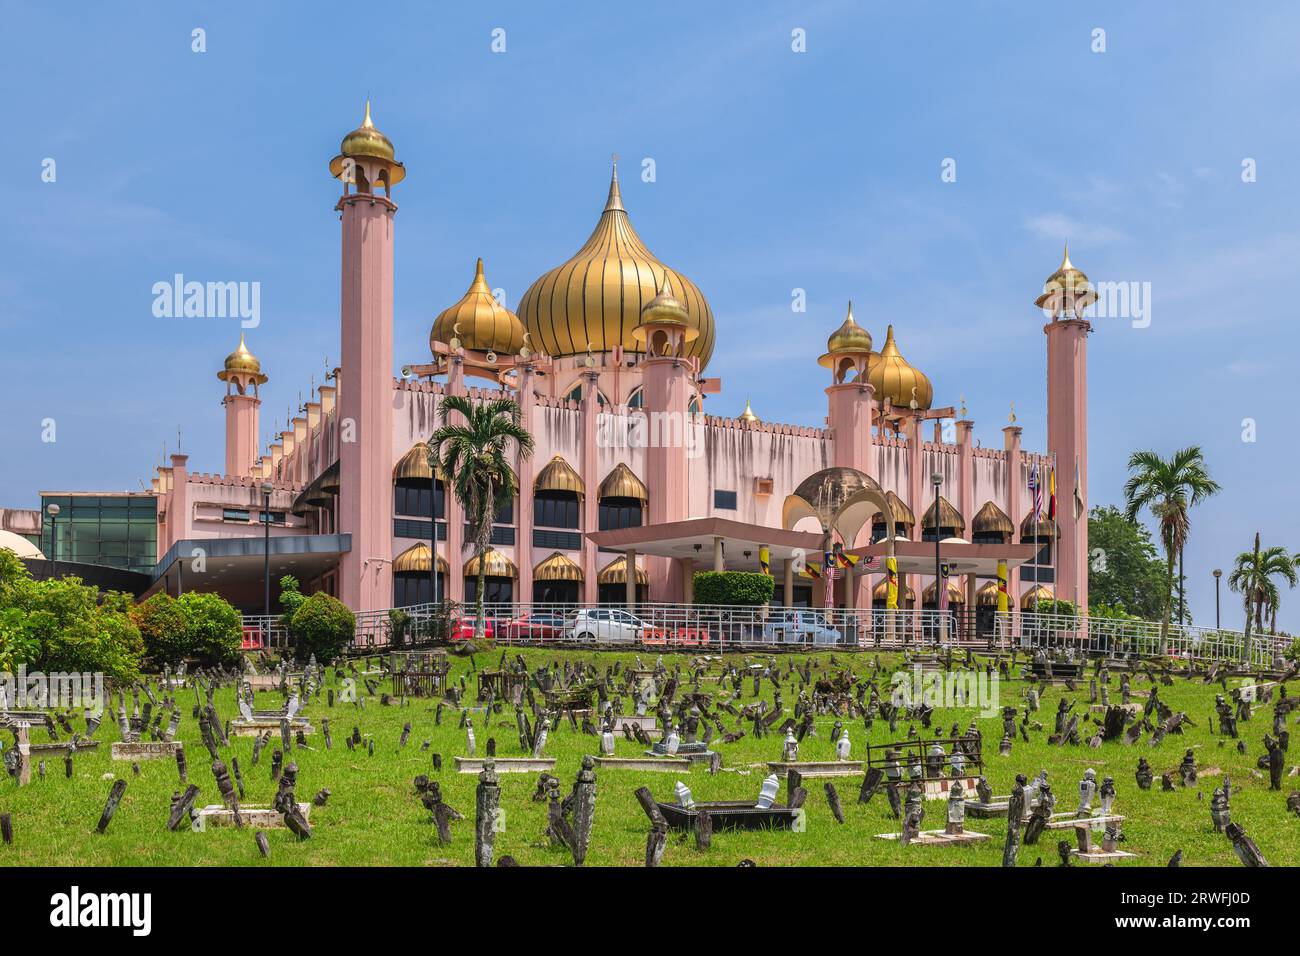 Mosquée Bandaraya Kuching située dans la ville de Kuching, Sarawak, Bornéo, Malaisie orientale Banque D'Images